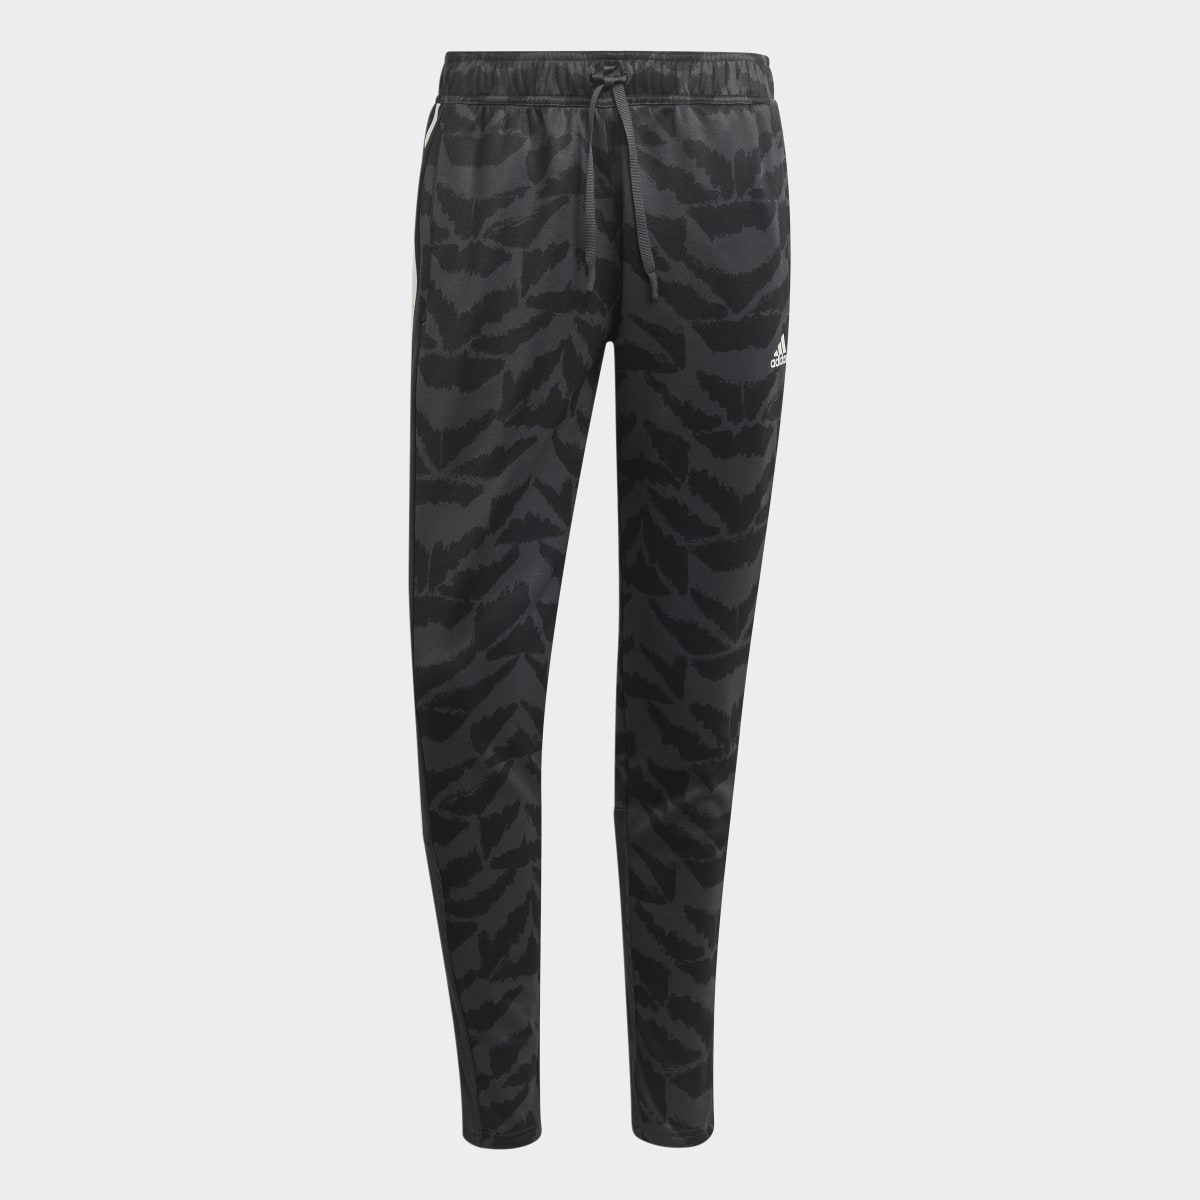 Adidas Pantalon de survêtement Tiro Suit-Up Lifestyle. 5